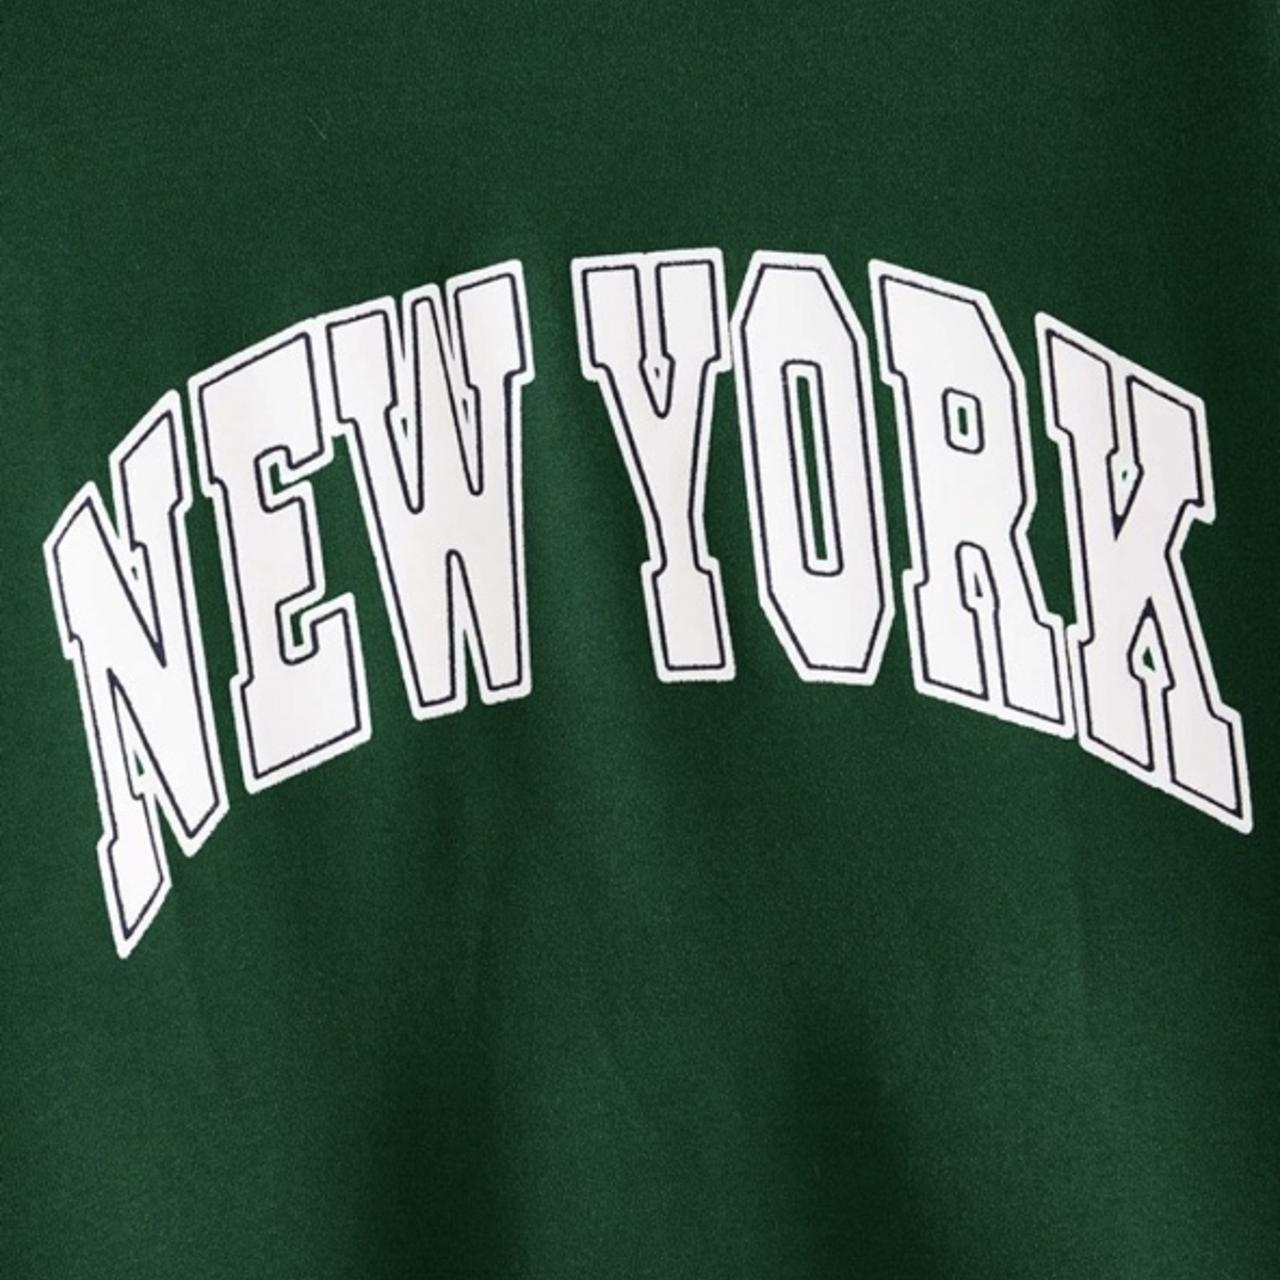 Shein Brooklyn New York NYC Green Women's Sweatshirt Sz Small S -  Sweatshirts & Hoodies, Facebook Marketplace